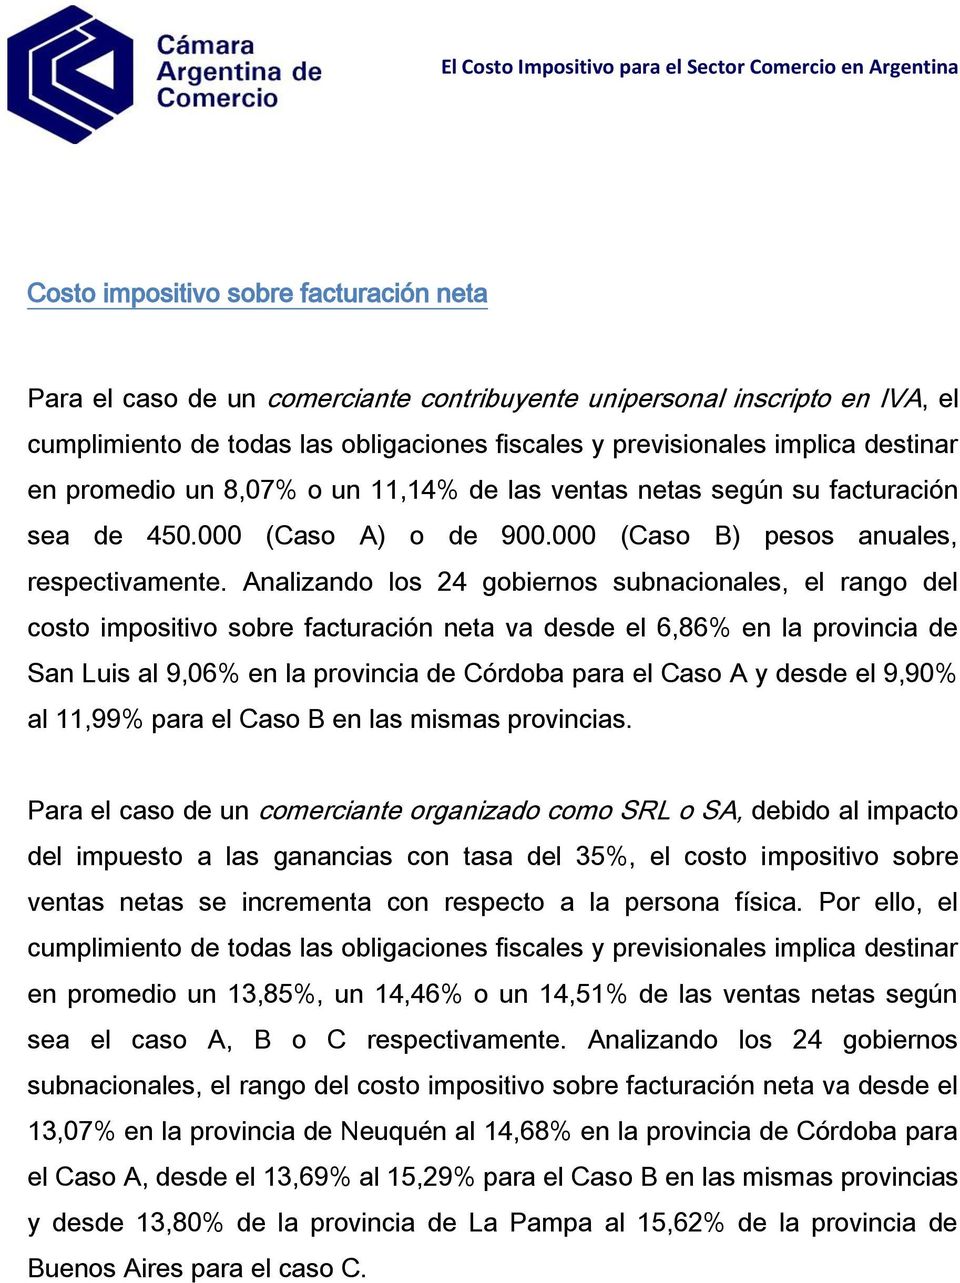 Analizando los 24 gobiernos subnacionales, el rango del costo impositivo sobre facturación neta va desde el 6,86% en la provincia de San Luis al 9,06% en la provincia de Córdoba para el Caso A y